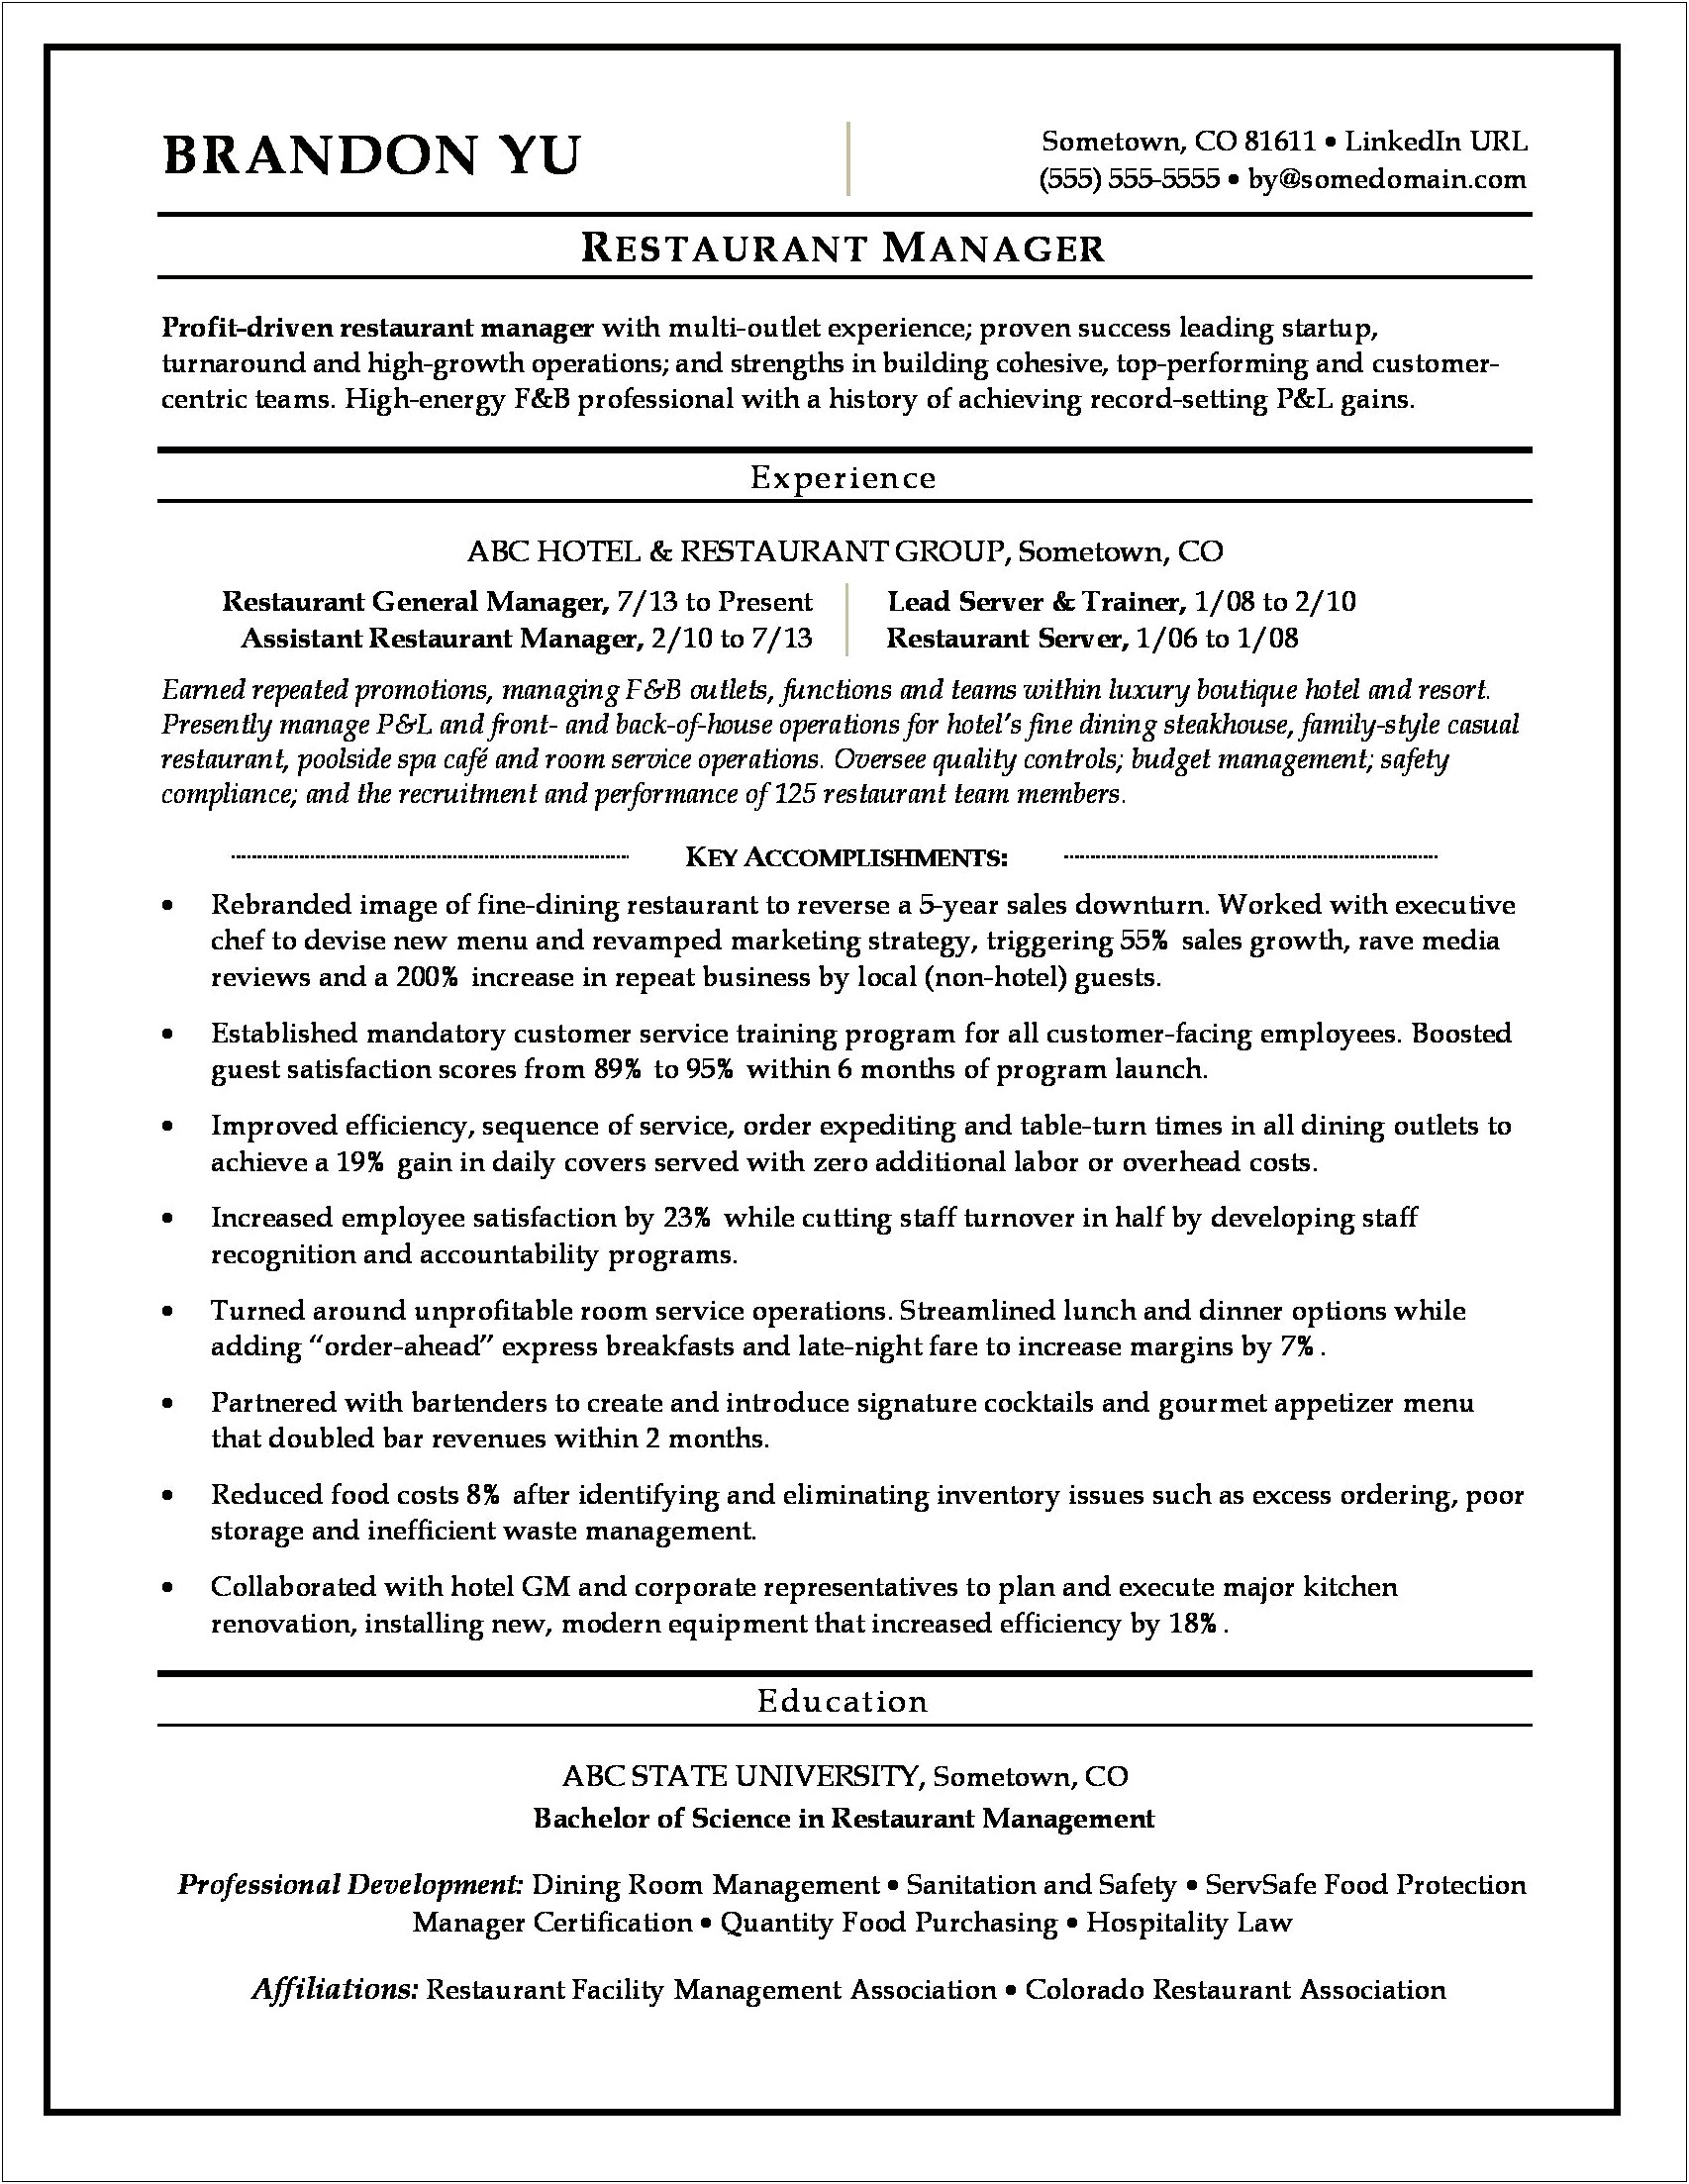 Resume For Assitent Manager Restaurant Job